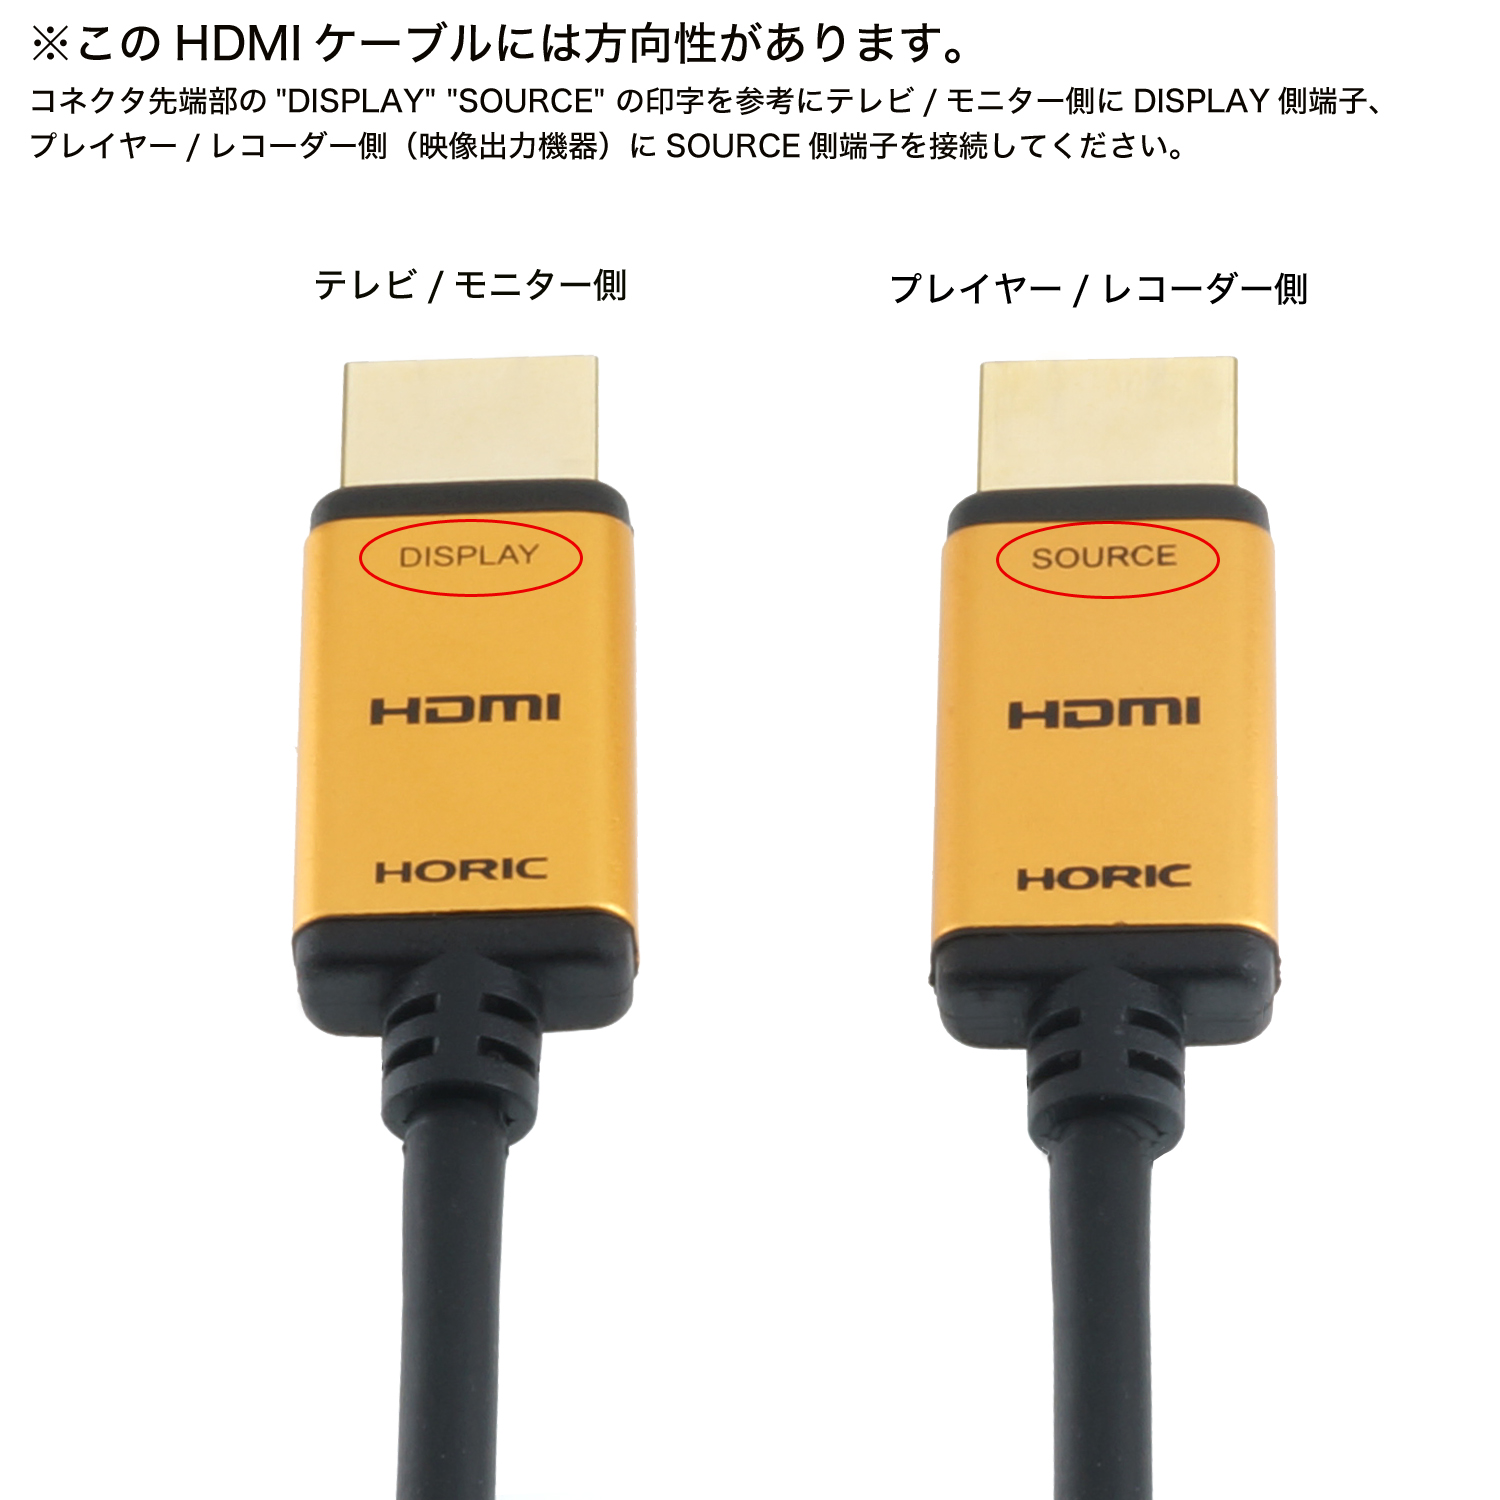 ラトックシステム HDMI光ファイバーケーブル 4K60Hz対応 (20m) RCL-HDAOC4K60-020 